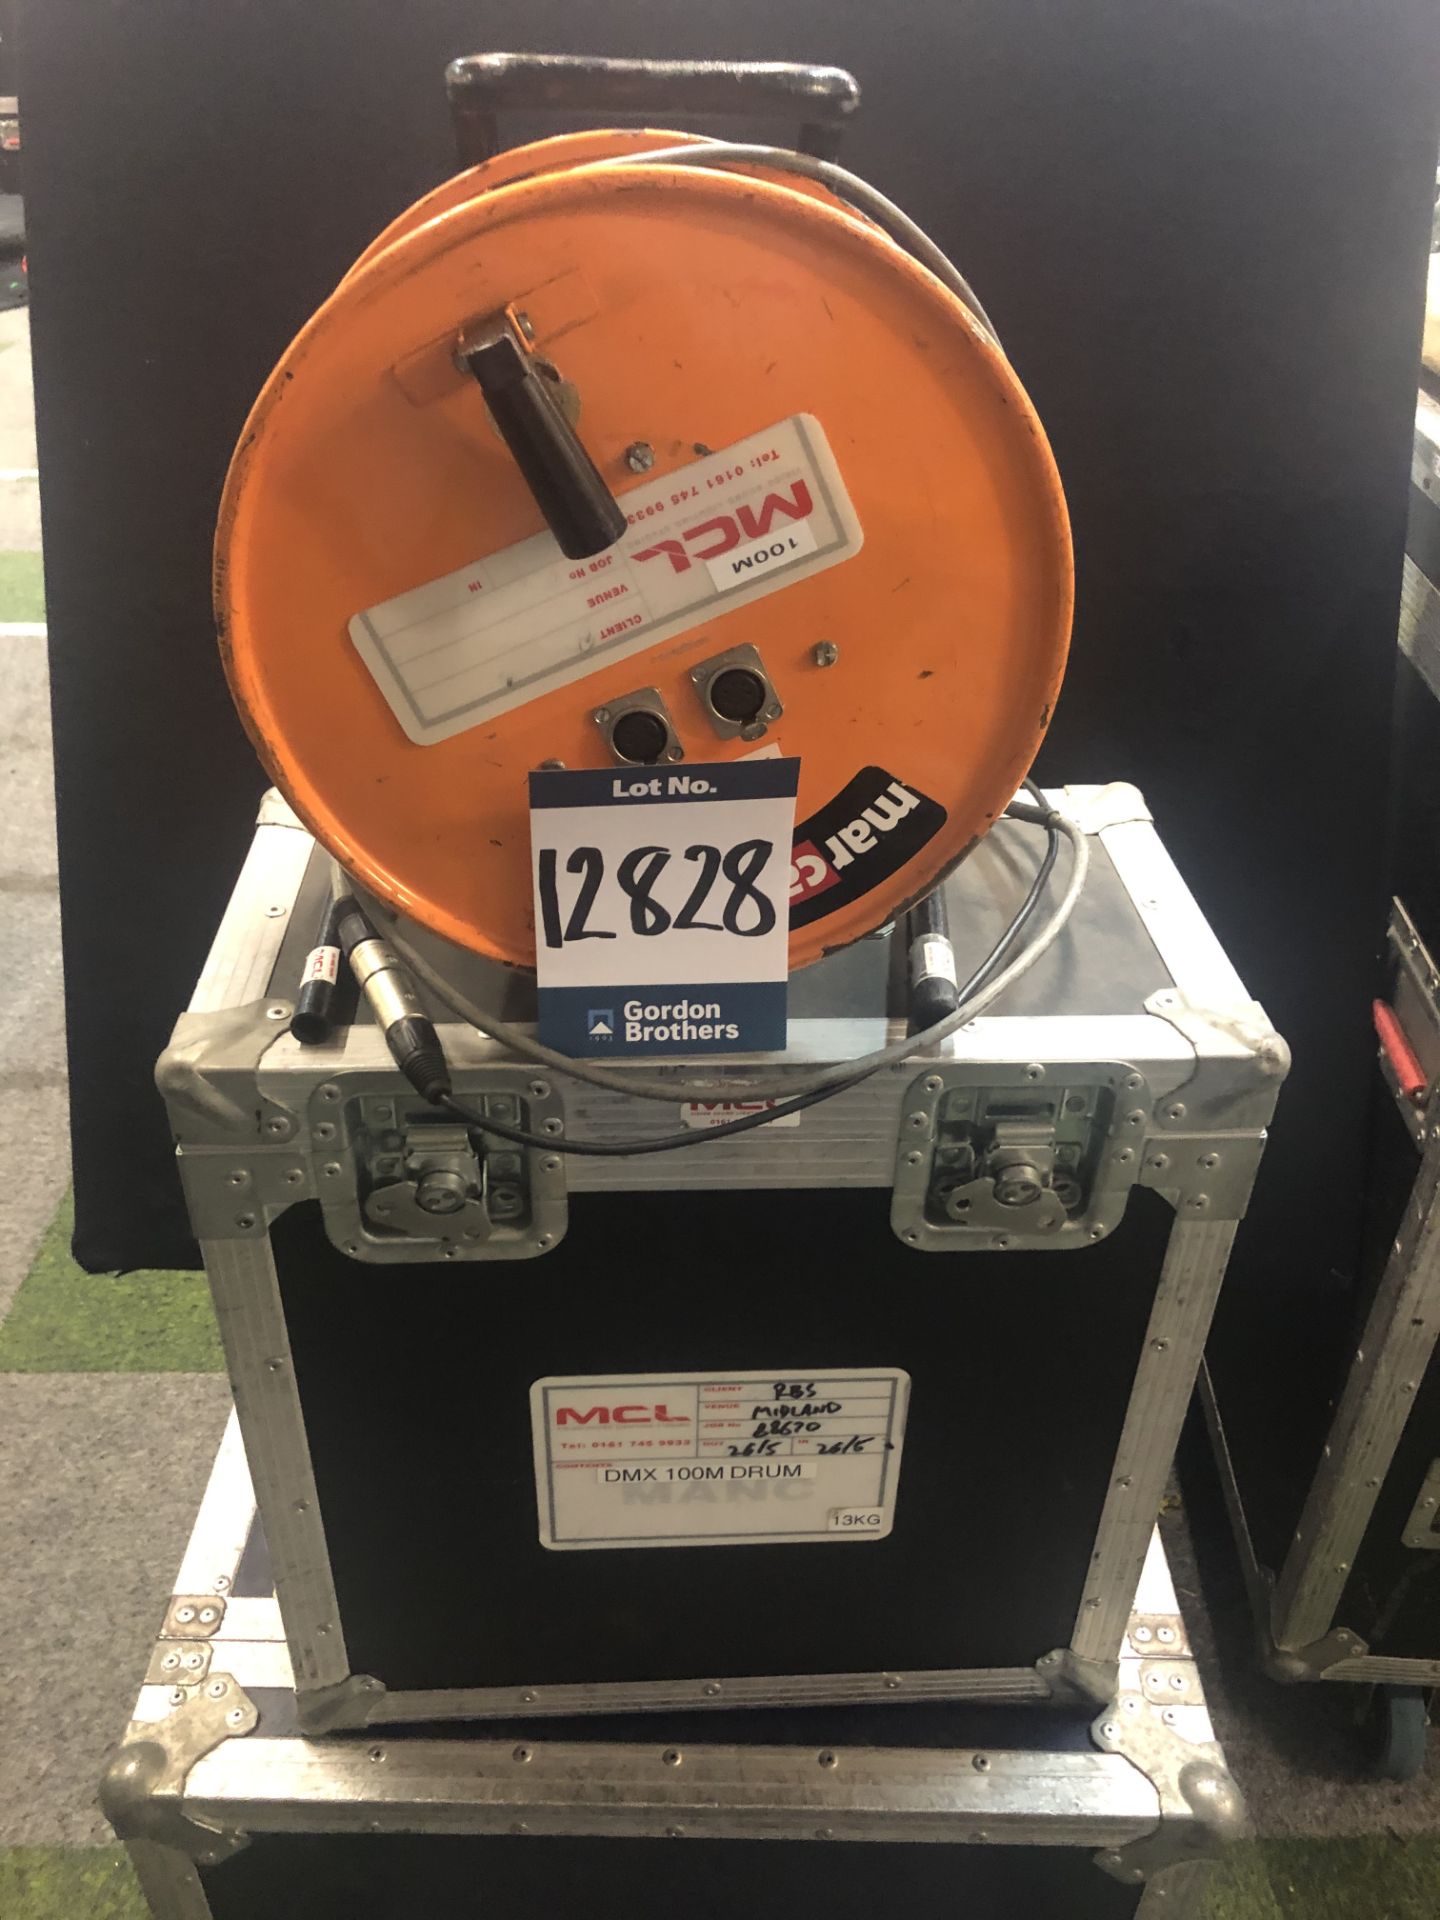 100m, DMX cable drum in transit case